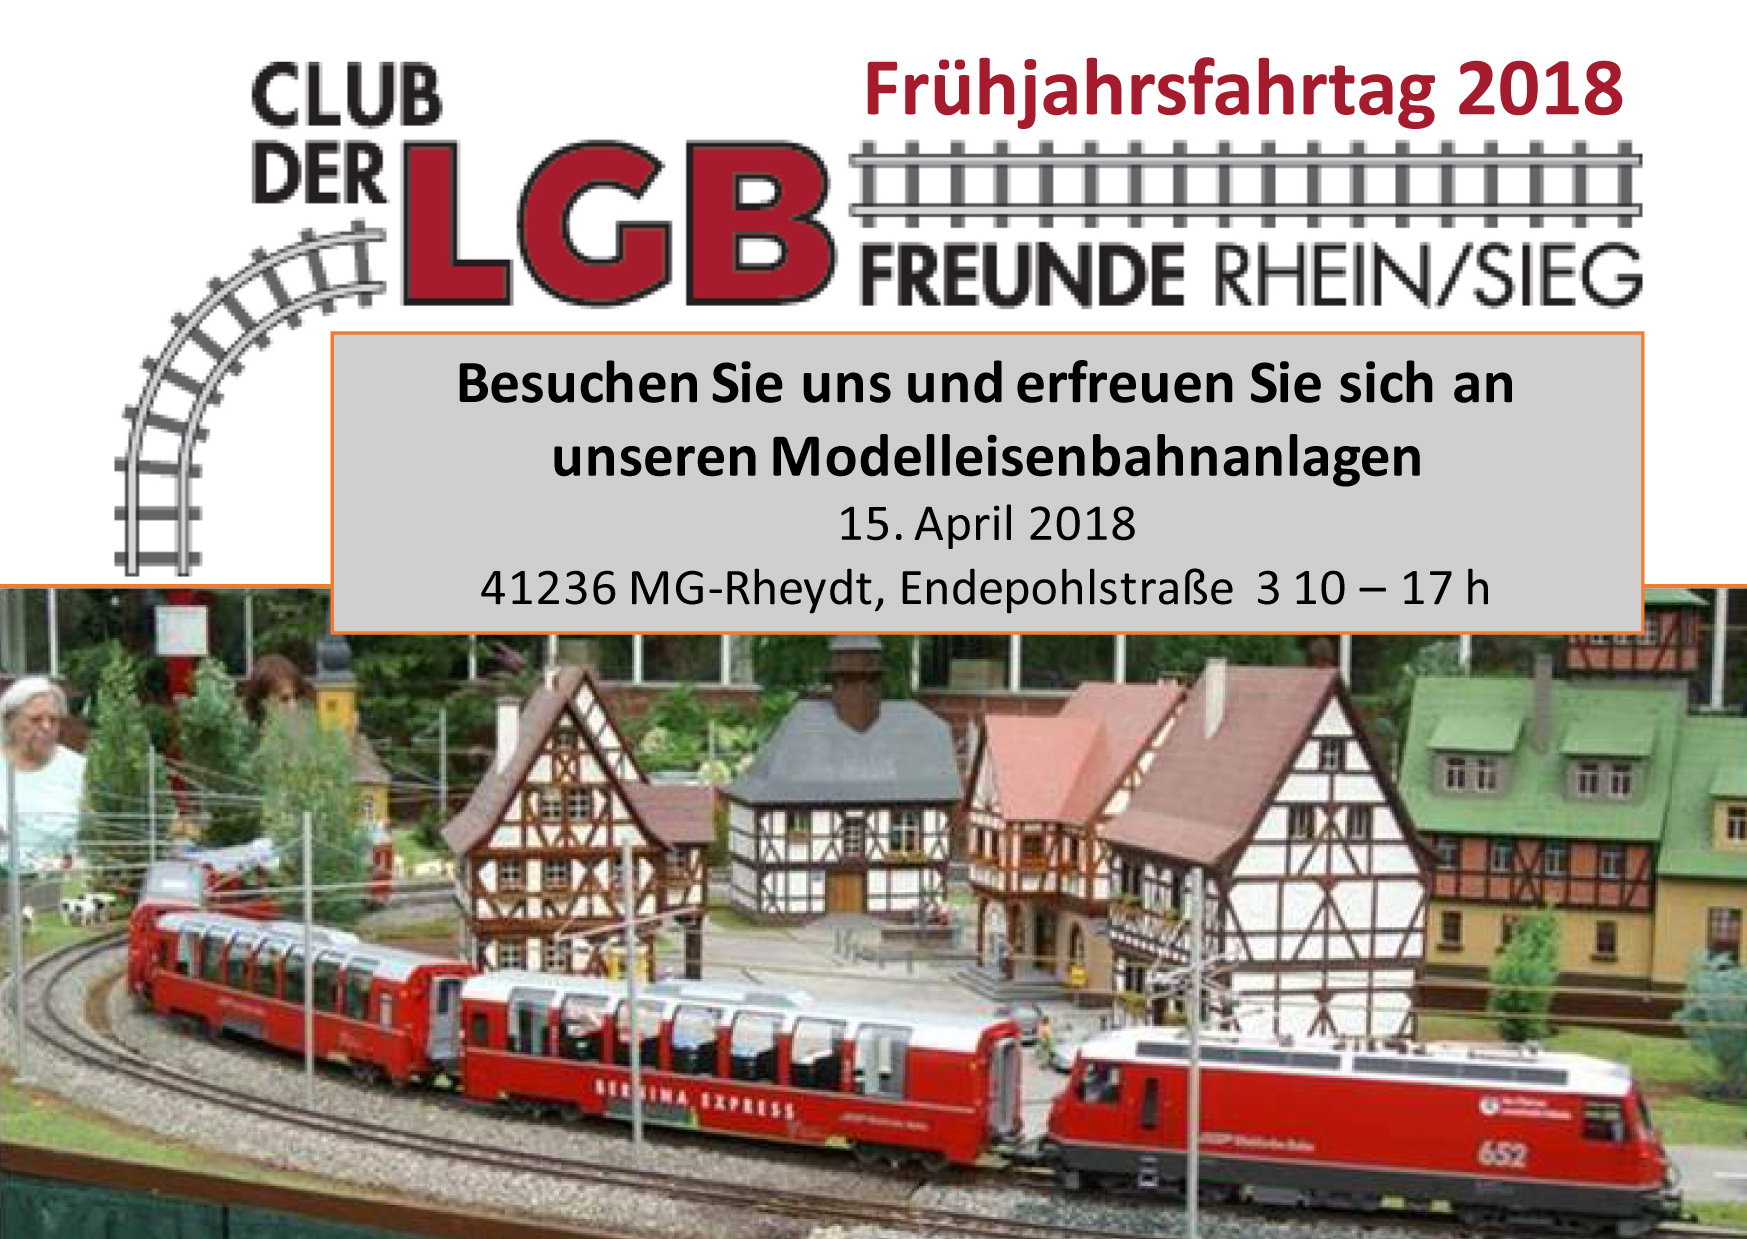 Am Sonntag, den 15. April 2018, geht es los mit der Fahrt ins Frhjahr 2018 in unserem Clubdomizil in Mnchengladbach Rheydt. 